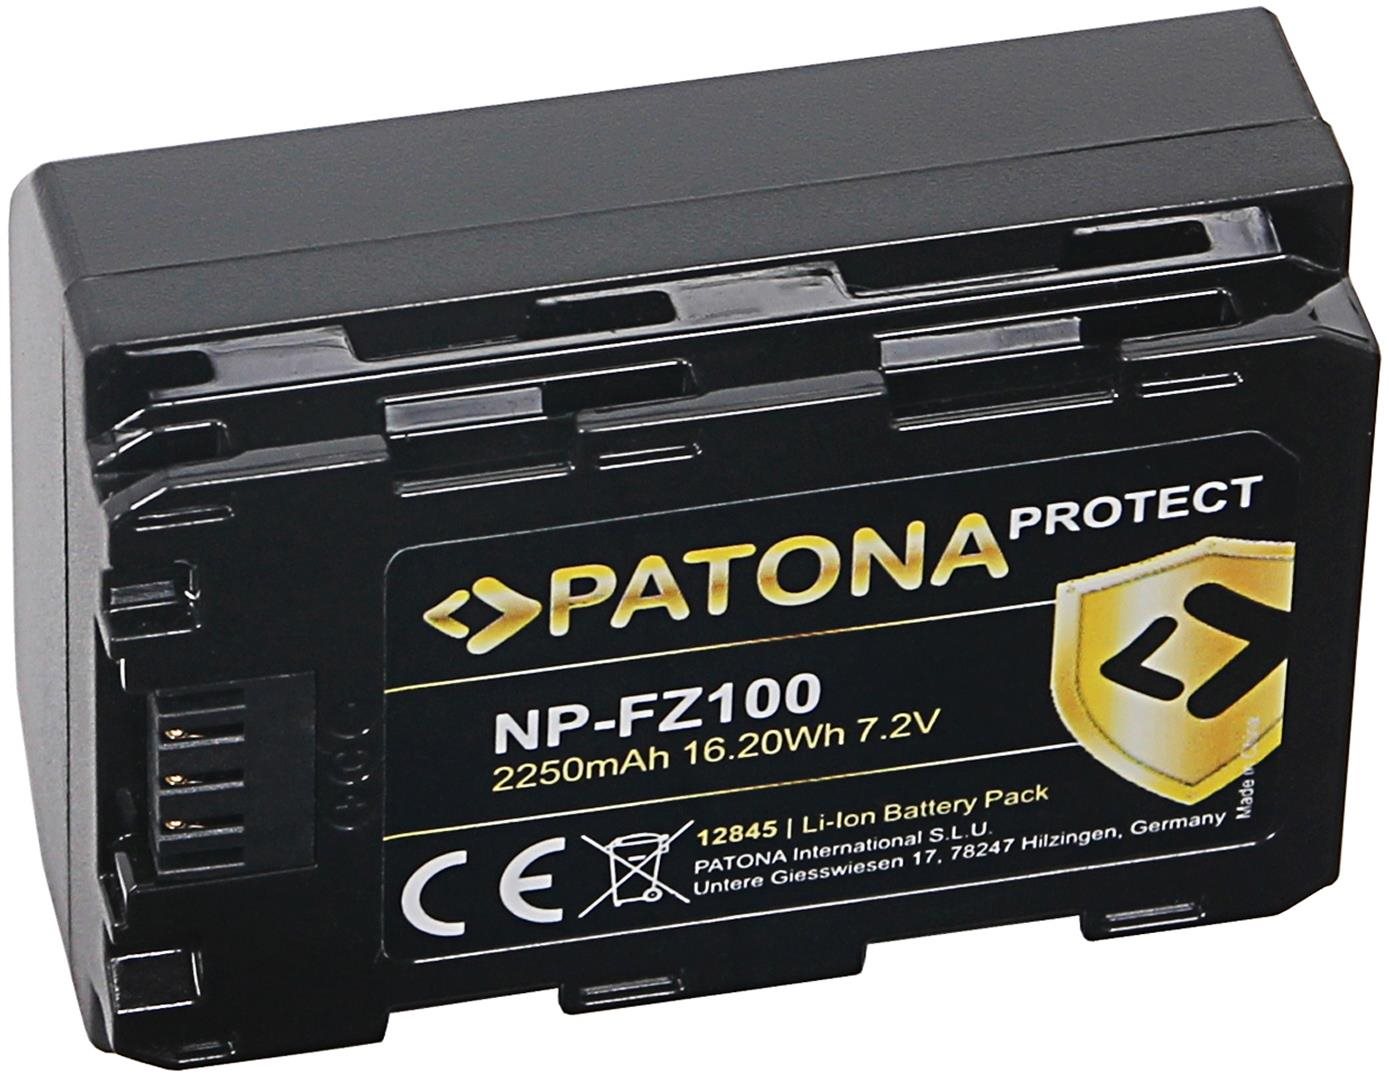 PATONA Sony NP-FZ100 2250mAh Li-Ion Protect